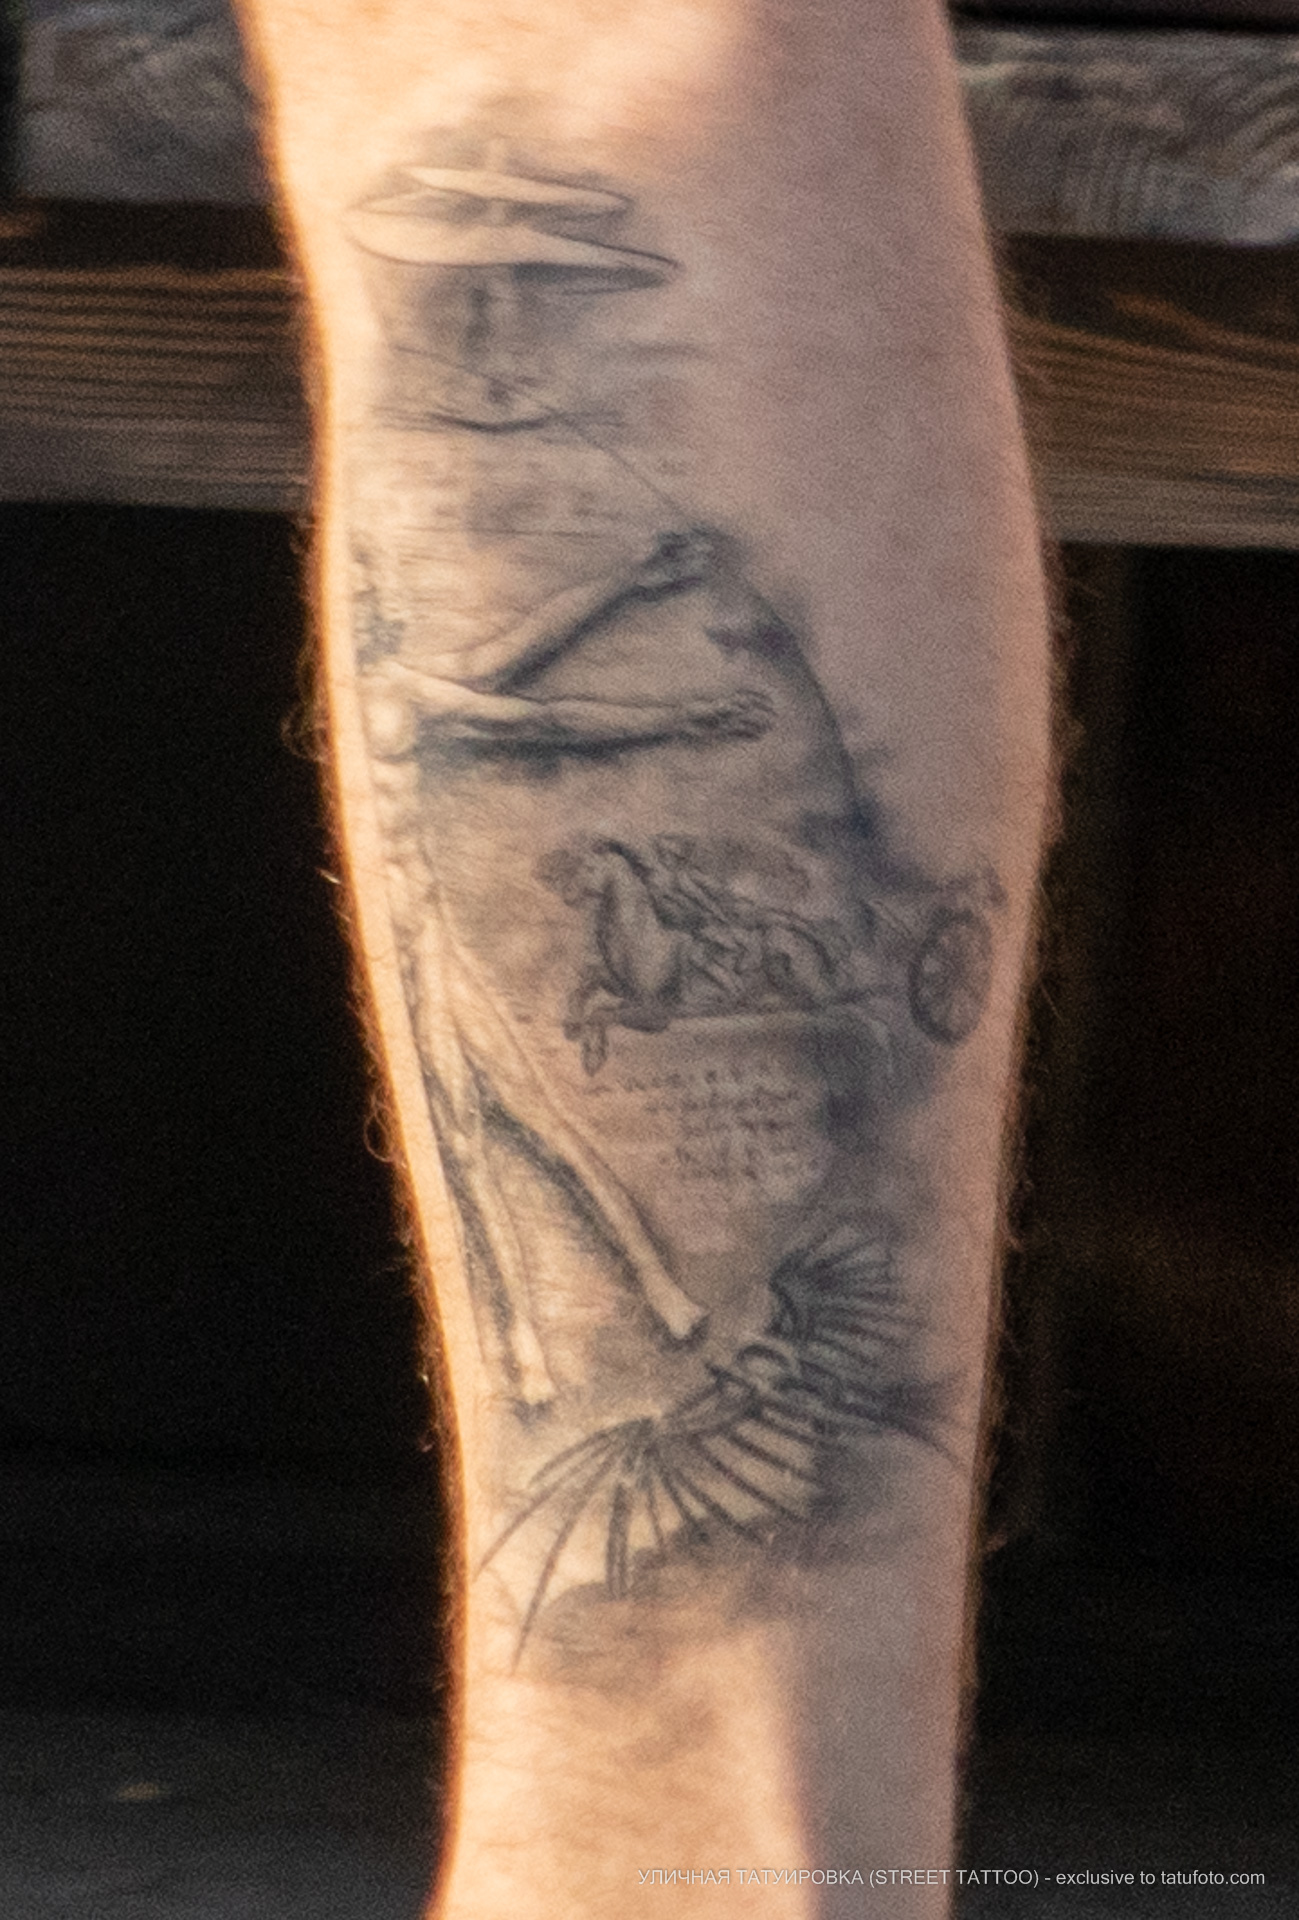 Фото татуировки с Витрувианским человеком и чертежами изобретений Леонардо да Винчи – Уличная татуировка (street tattoo) № 06 – 18.06.2020 – tatufoto.com 3